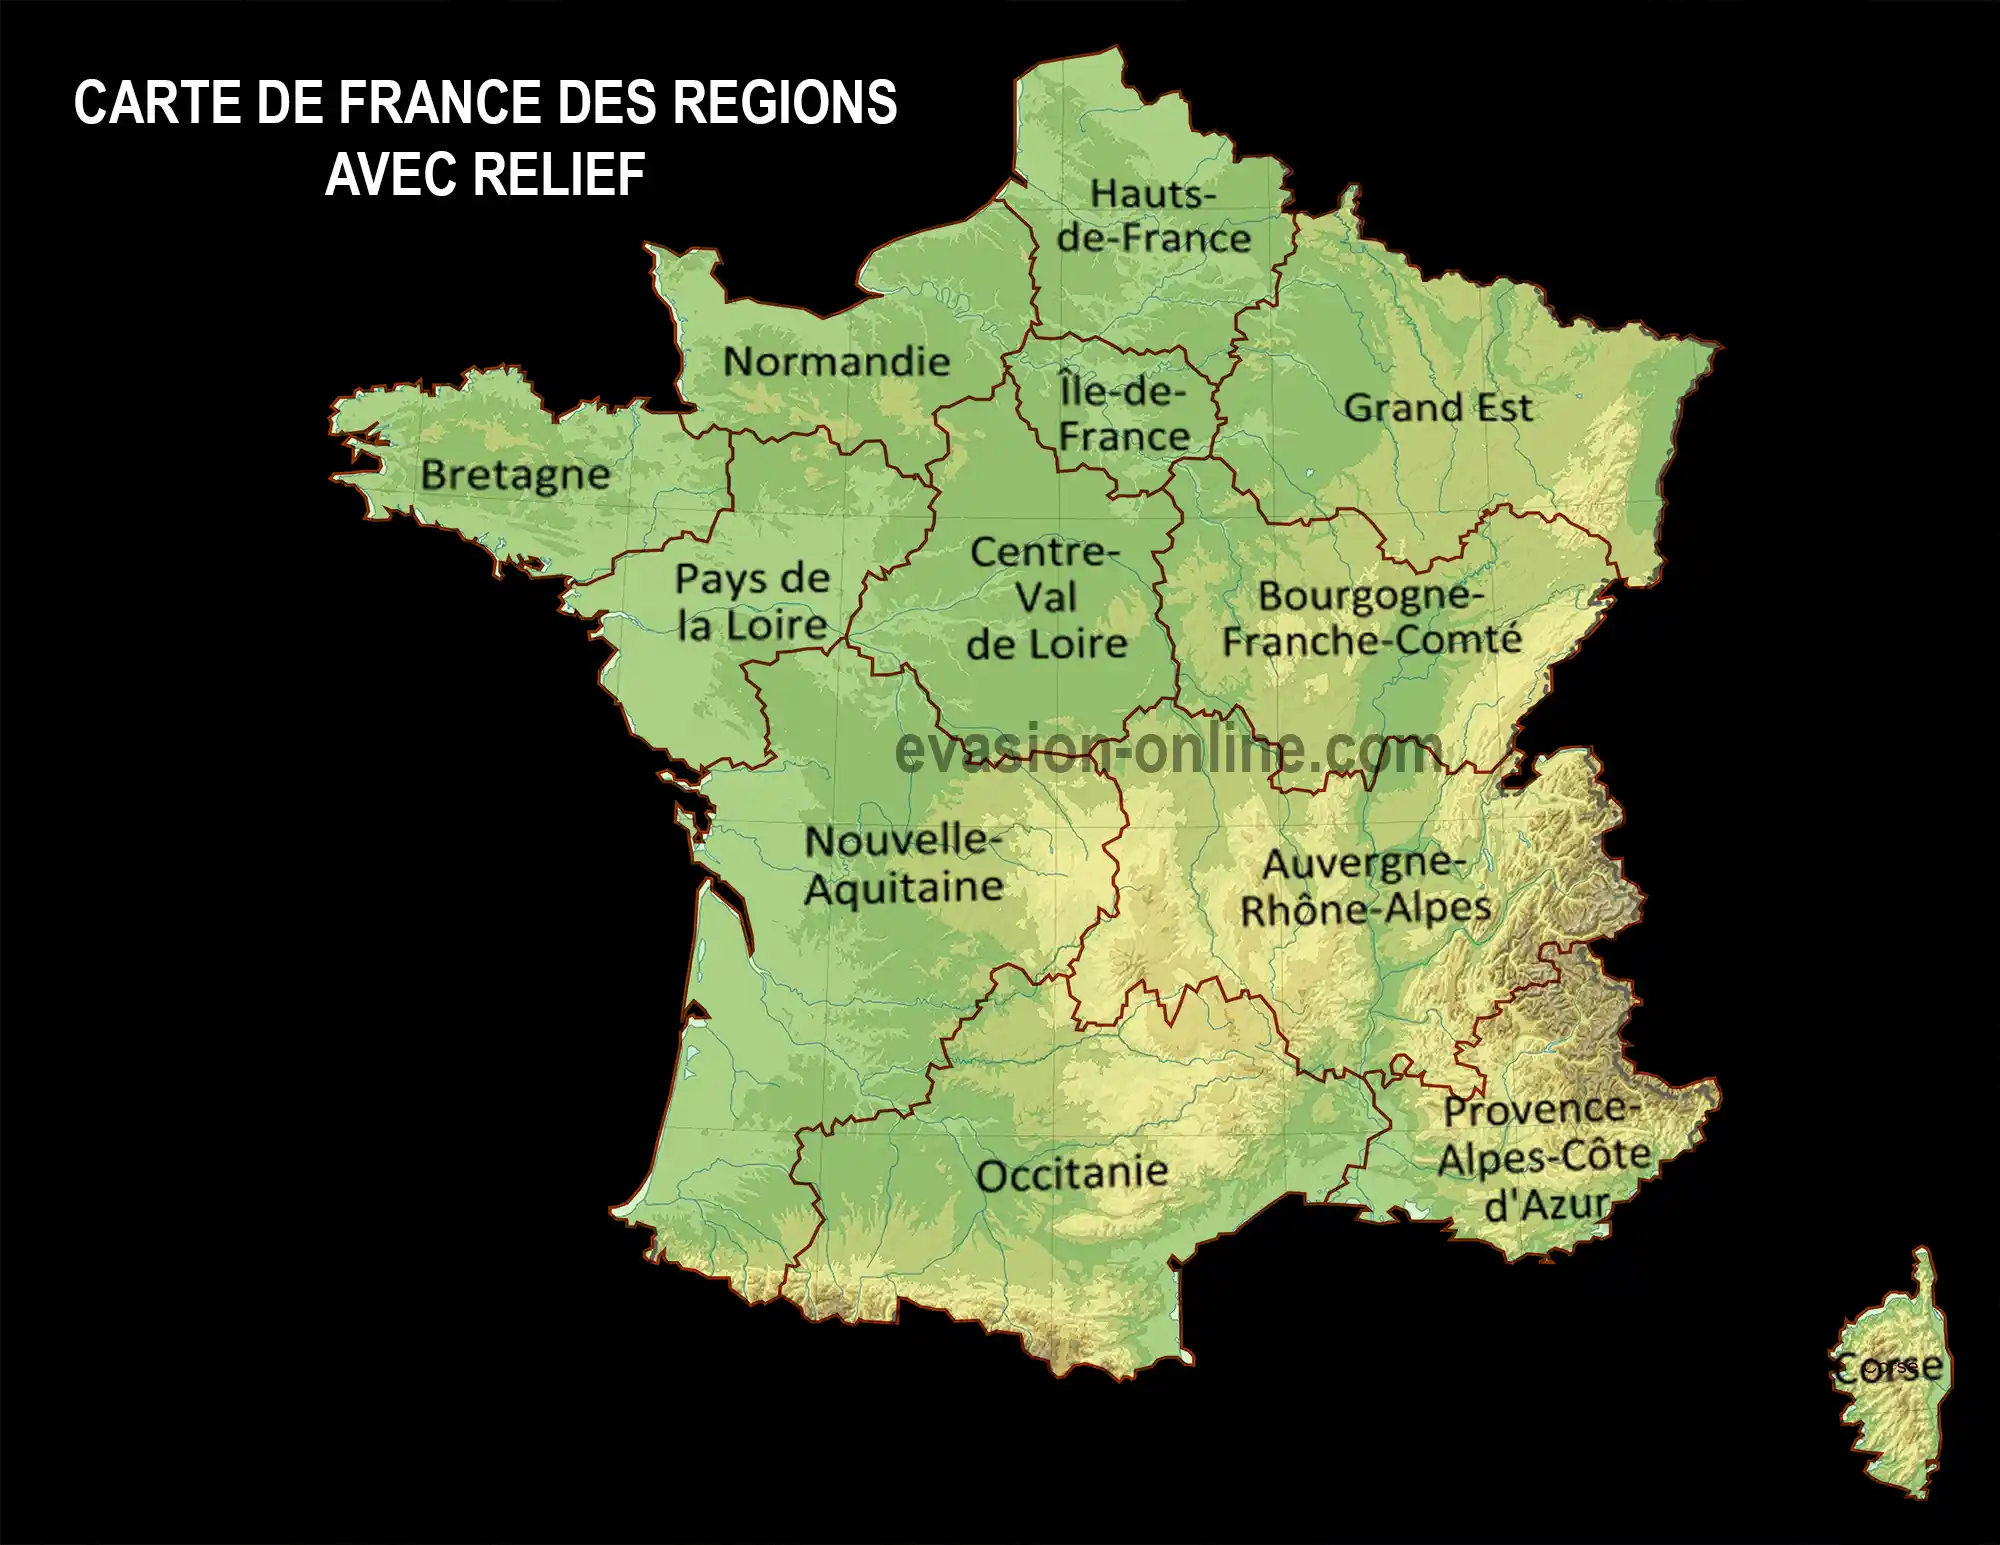 Carte de France des régions avec relief